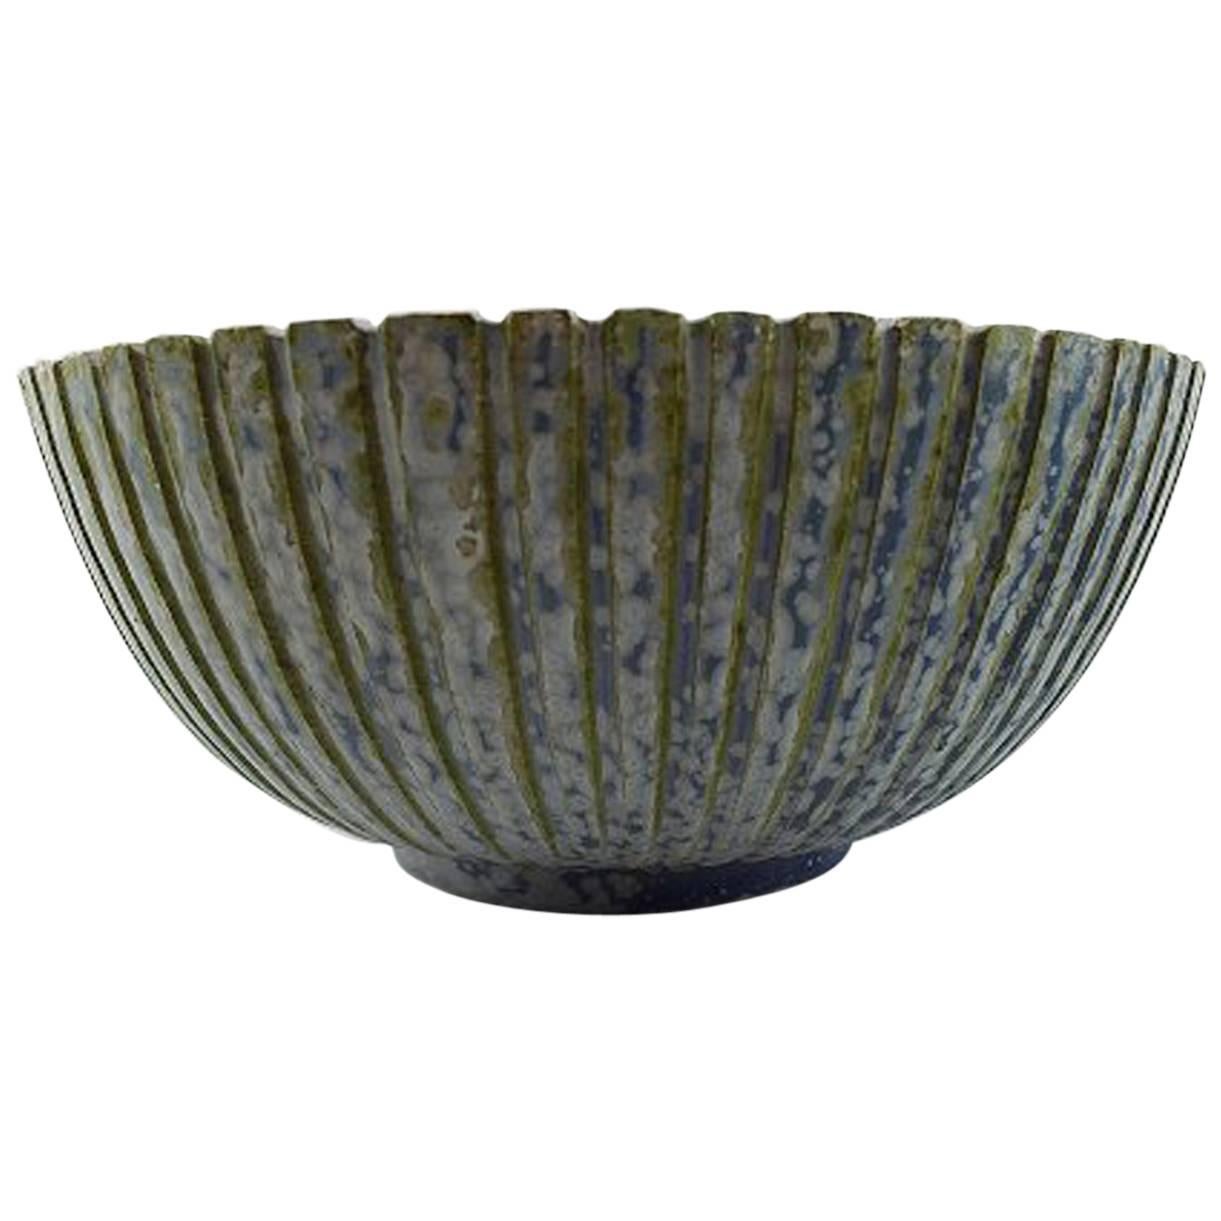 Arne Bang Ceramics Bowl, Marked AB 123